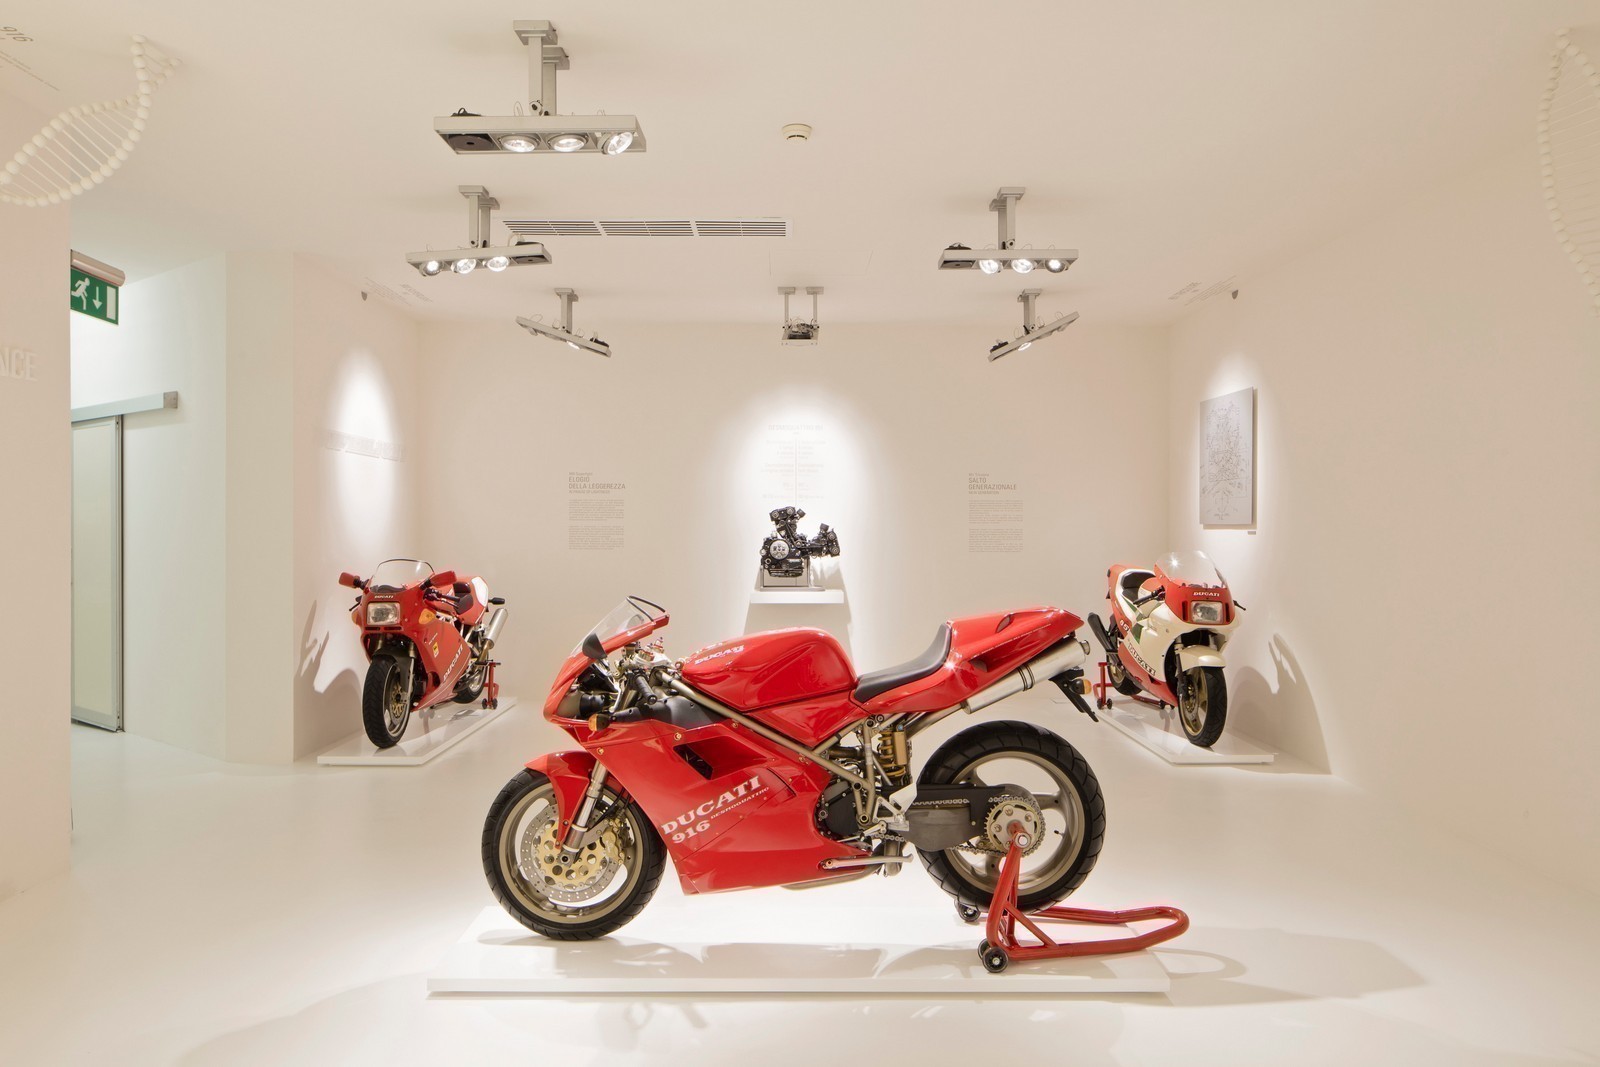 Ducati Museum Room 3 UC39330 Mid